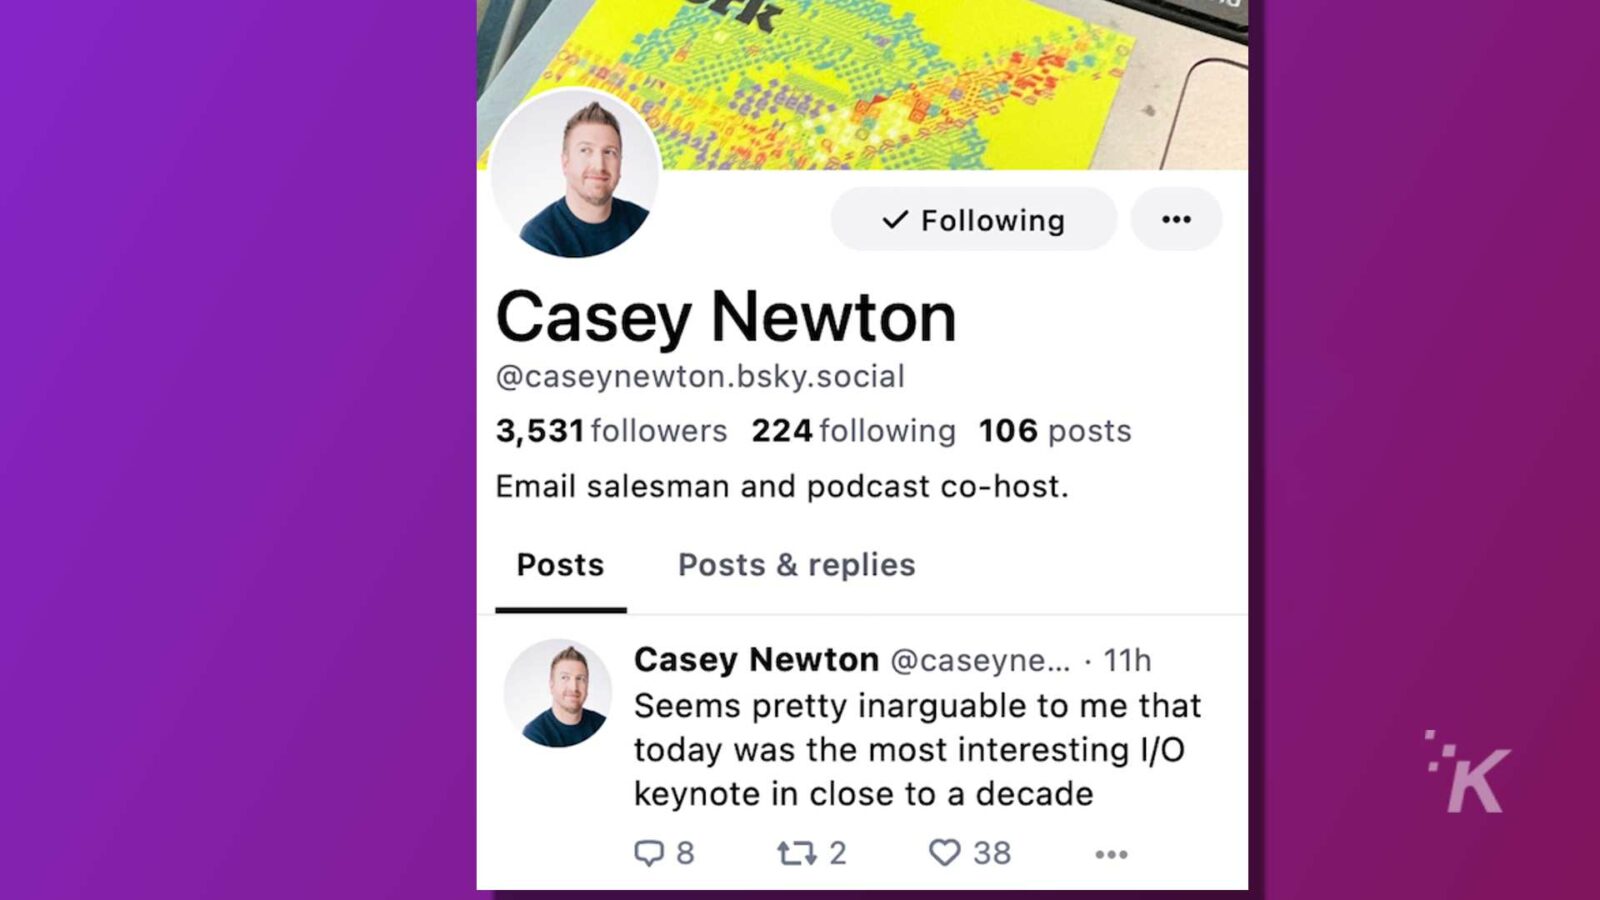 凱西·牛頓 (Casey Newton) 是一名推銷員、播客聯合主持人和社交媒體用戶，擁有 3,531 名關注者，他們正在分享他們對最近發生的事件的看法。全文：V Following .. Casey Newton @caseynewton.bsky.social 3,531 位關注者 224 位關注 106 條帖子 電子郵件推銷員和播客共同主持人。帖子 帖子和回复 Casey Newton @caseyne ...。 11h 在我看來，今天是近十年來最有趣的 I/O 主題演講 t7 2 3 38 ...